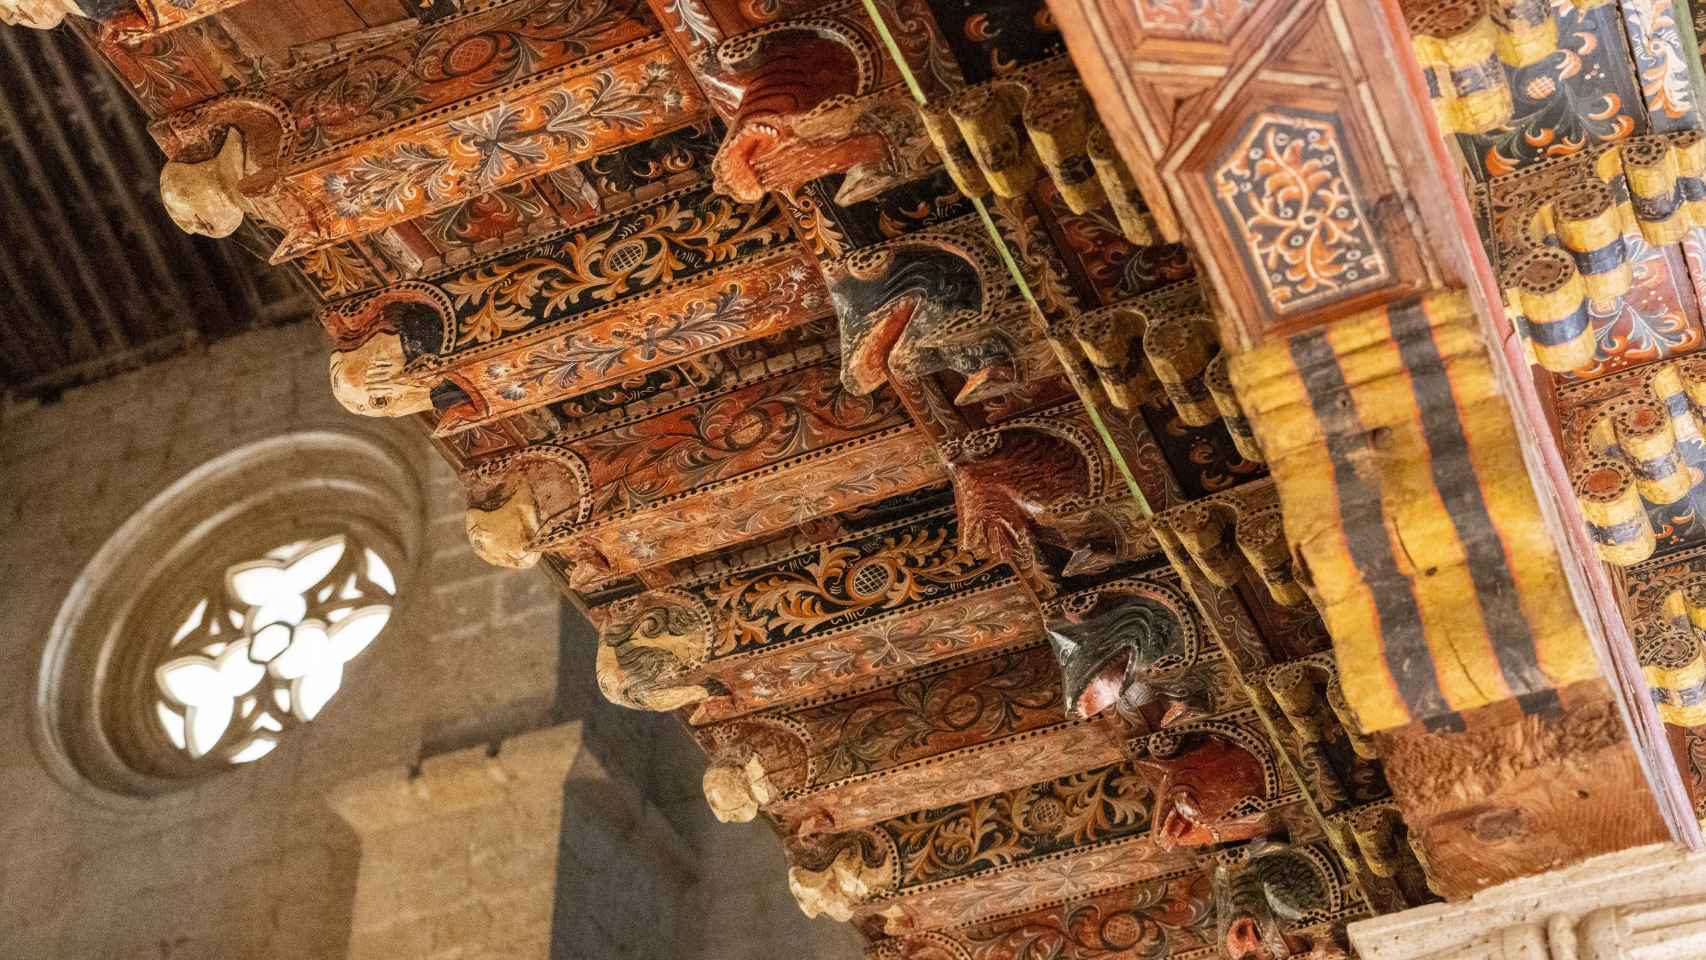 Detalles del artesonado mudéjar de la iglesia de Santa María en Becerril de Campos, perteneciente al Museo Territorial Campos del Renacimiento en Palencia